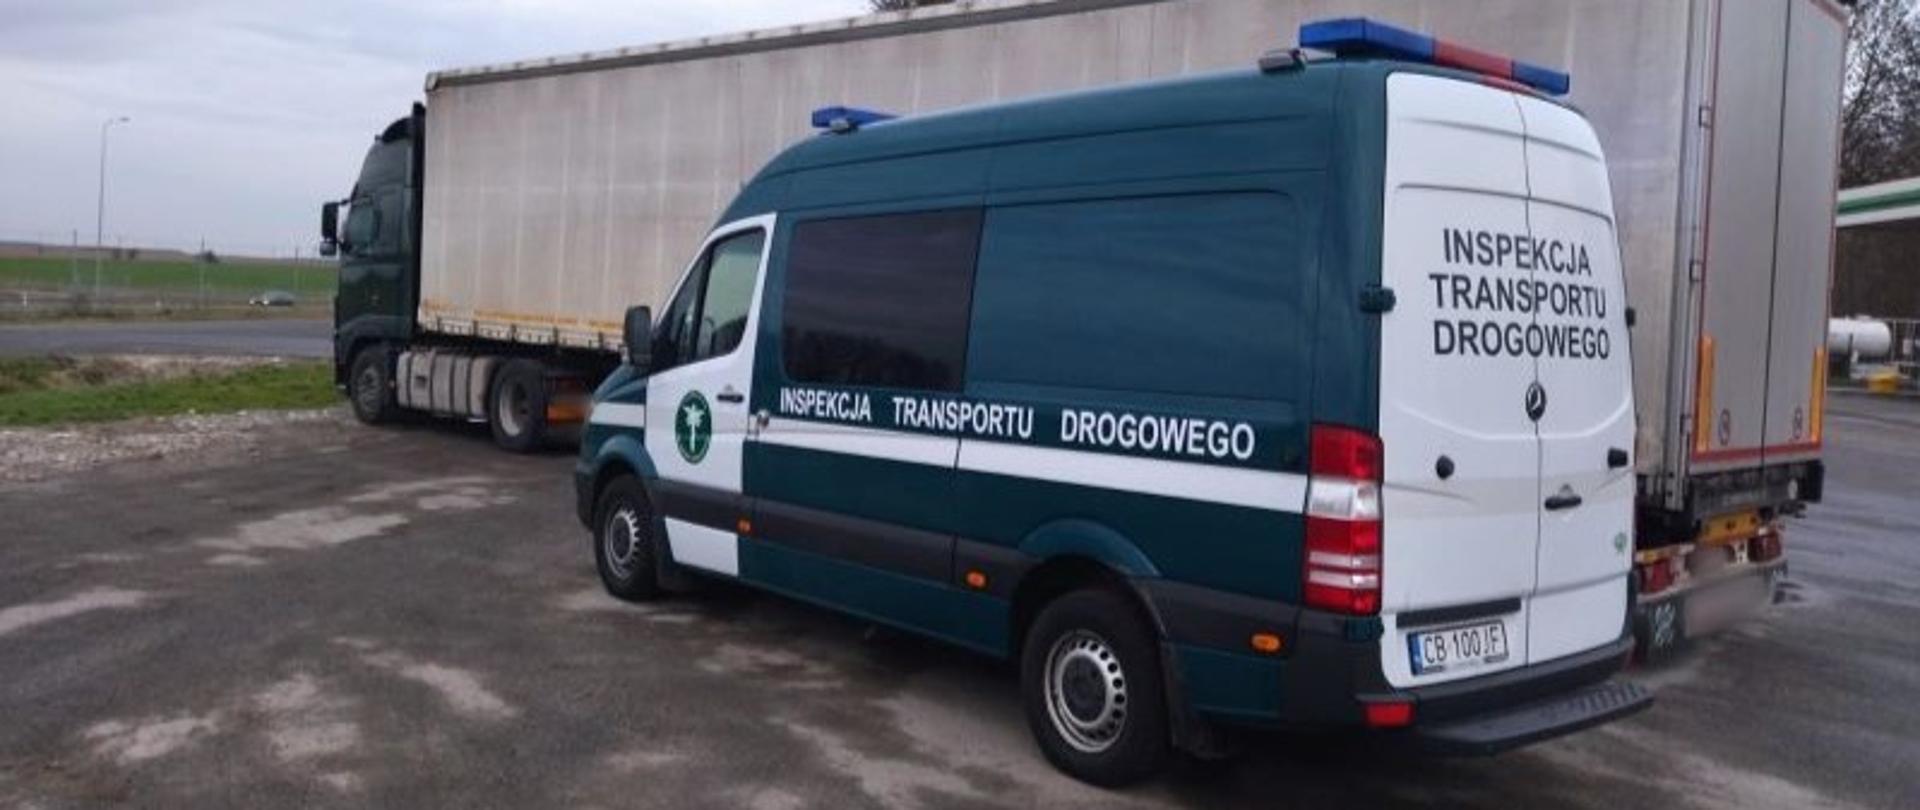 Oznakowany furgon kujawsko-pomorskiej Inspekcji Transportu Drogowego i stojący obok niego ciągnik siodłowy z podpiętą naczepą.